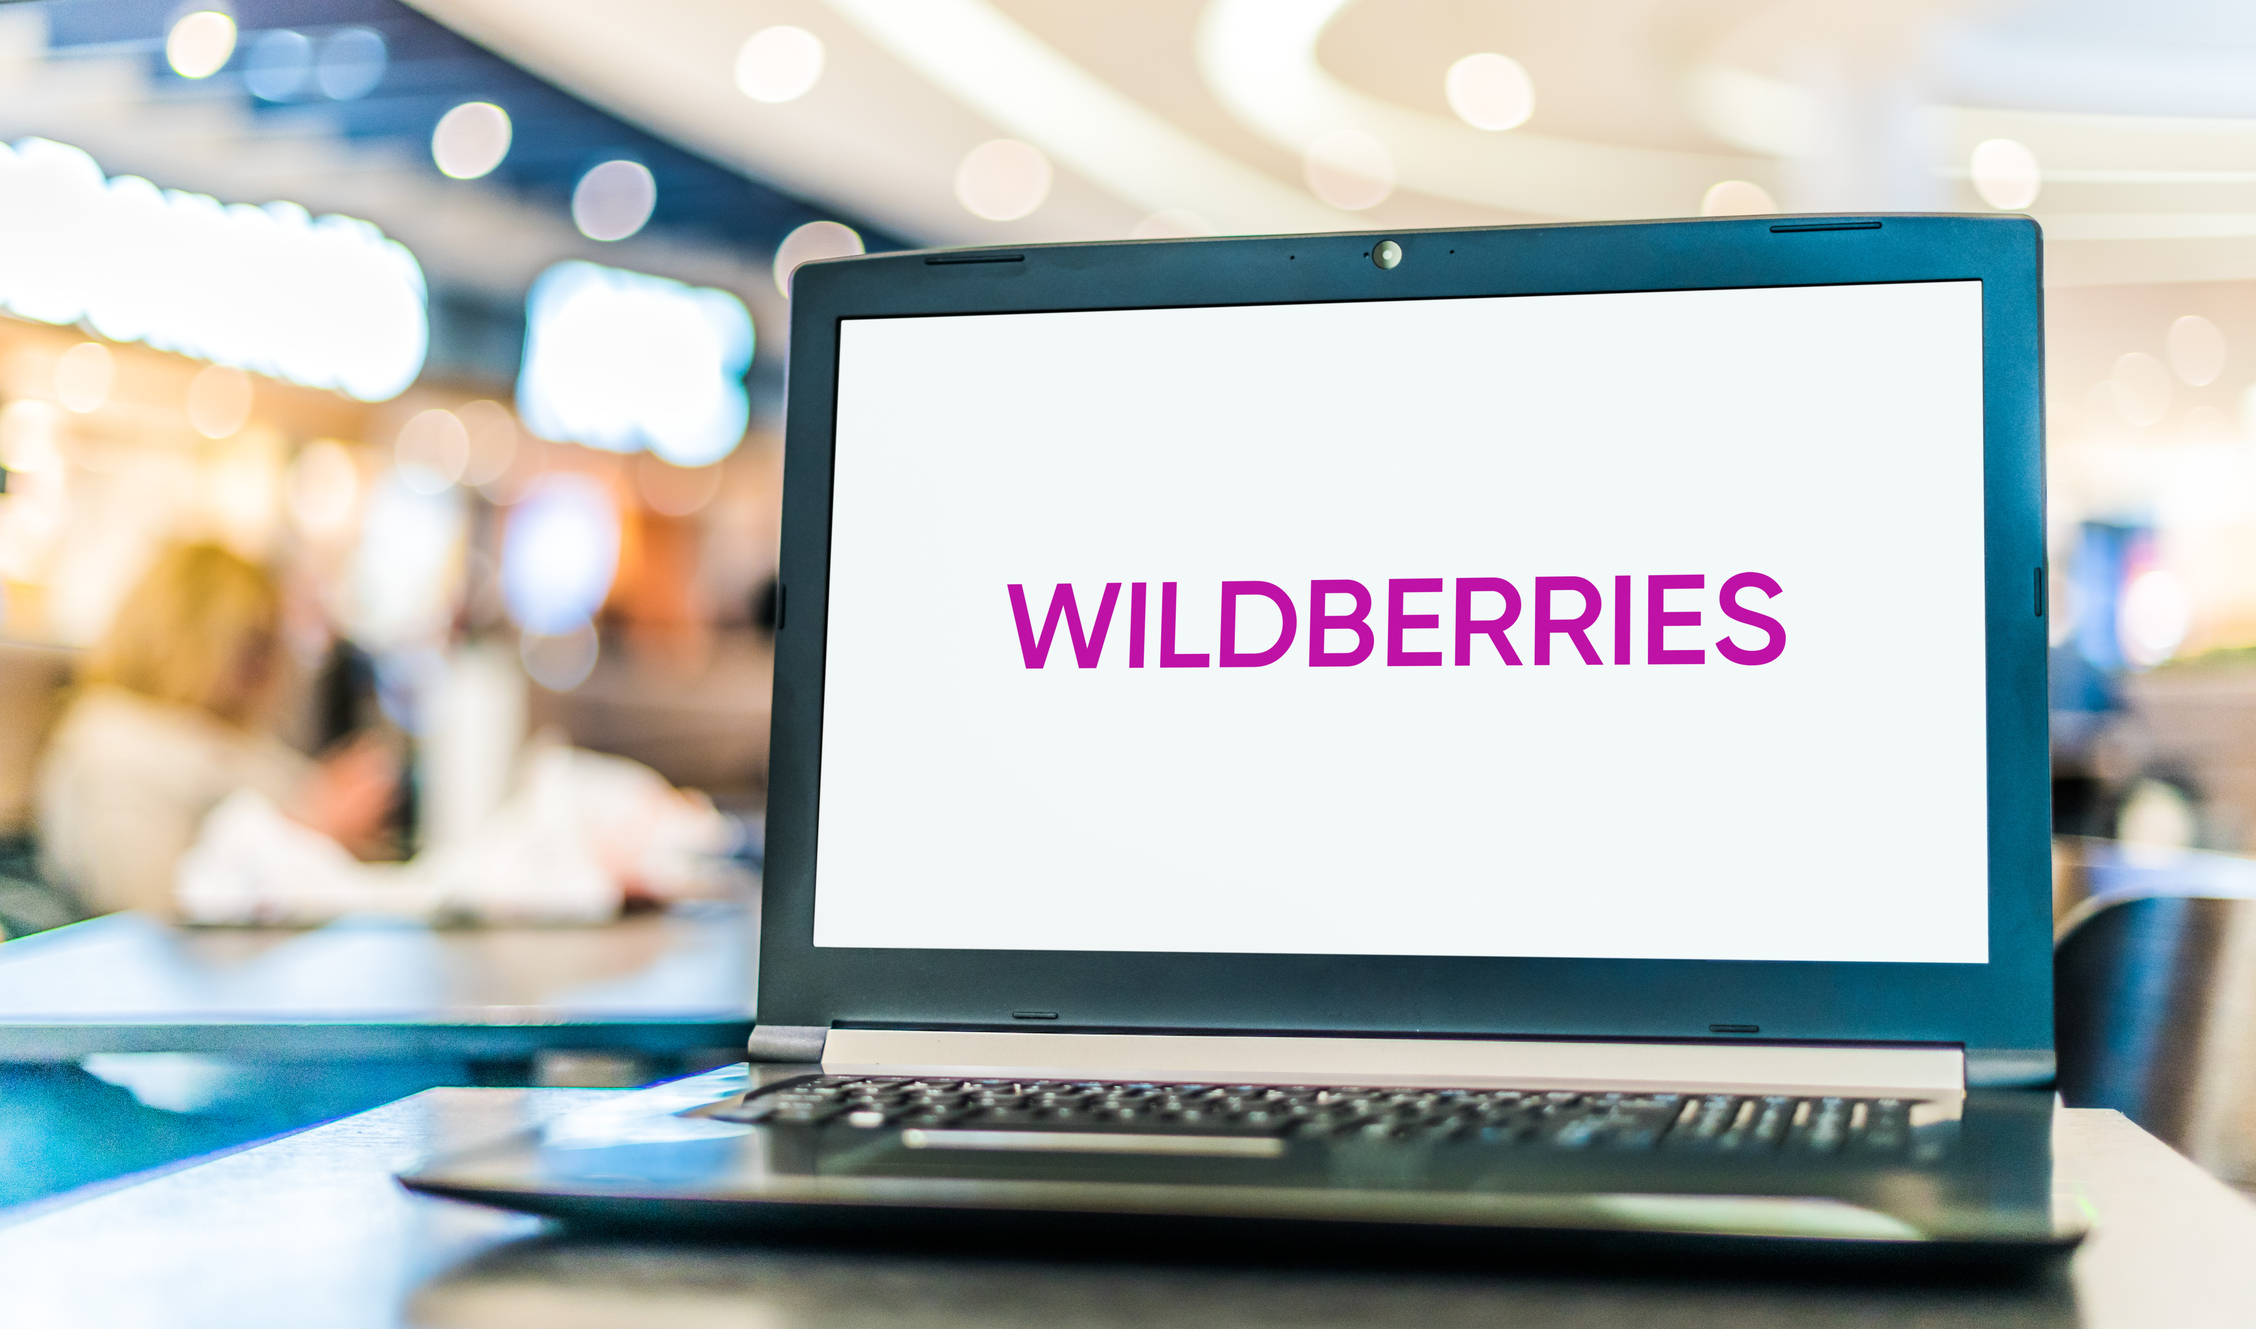 Wildberries Интернет Магазин Каталог Товаров Белгород Посмотреть